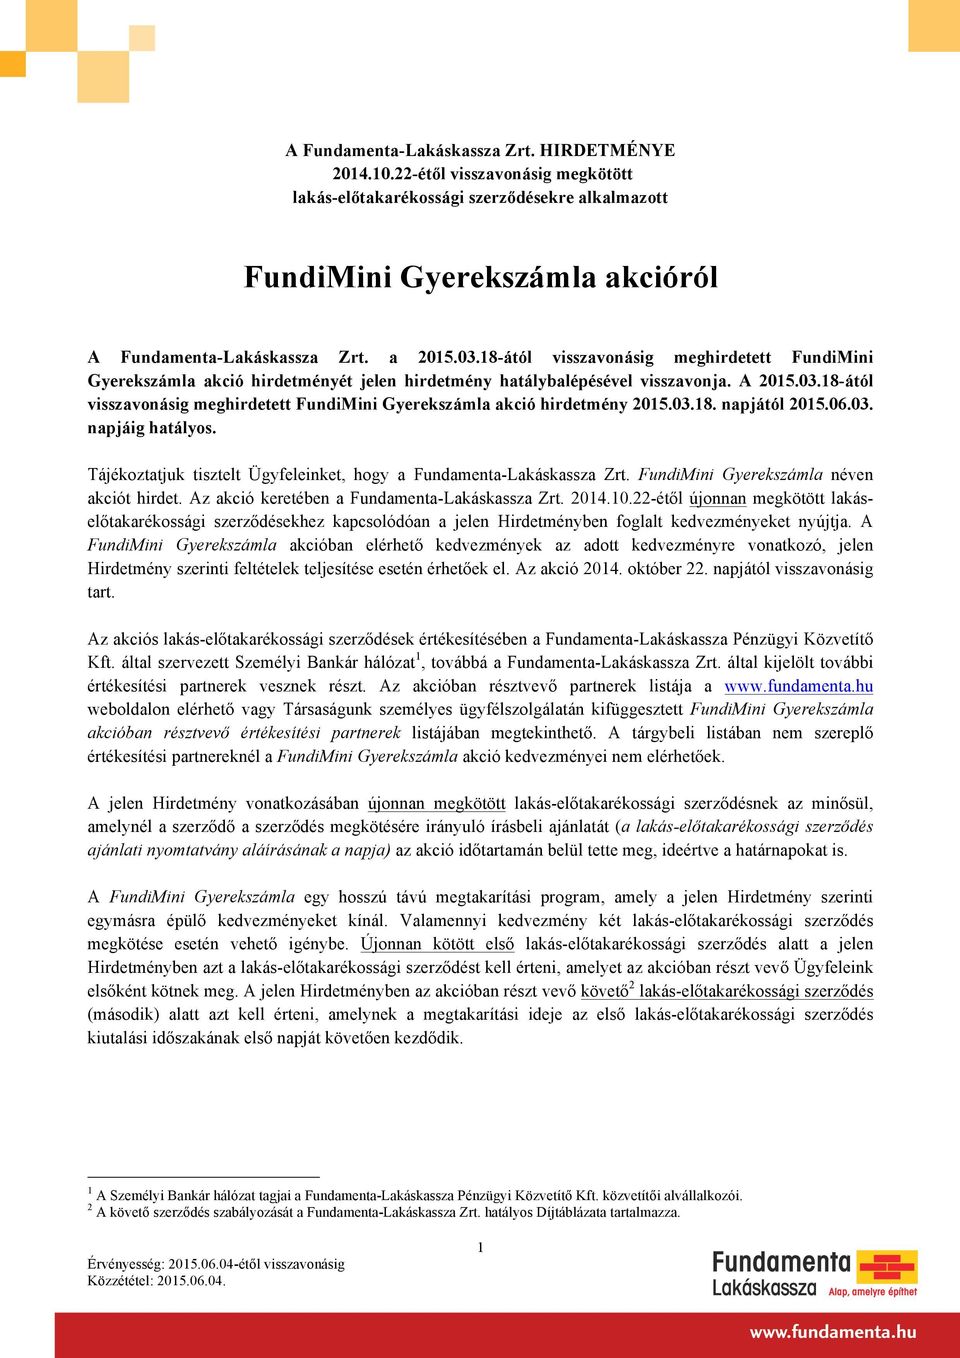 18-ától visszavonásig meghirdetett FundiMini Gyerekszámla akció hirdetmény 2015.03.18. napjától 2015.06.03. napjáig hatályos. Tájékoztatjuk tisztelt Ügyfeleinket, hogy a Fundamenta-Lakáskassza Zrt.